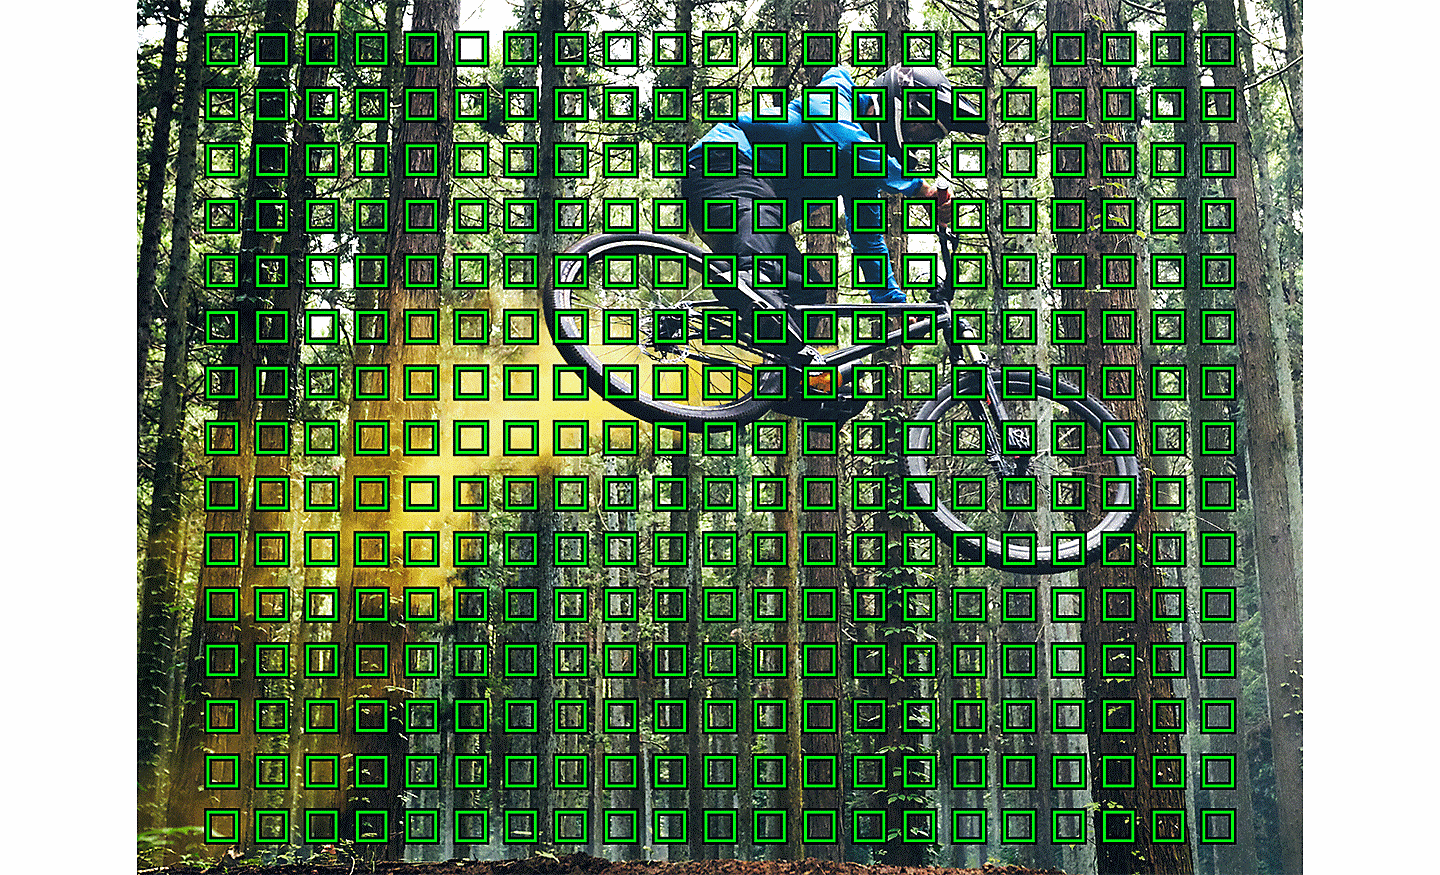 Hình ảnh một người đi xe đạp leo núi trong rừng, với nhiều ô vuông màu xanh lá thể hiện các điểm lấy nét tự động chồng lên trên